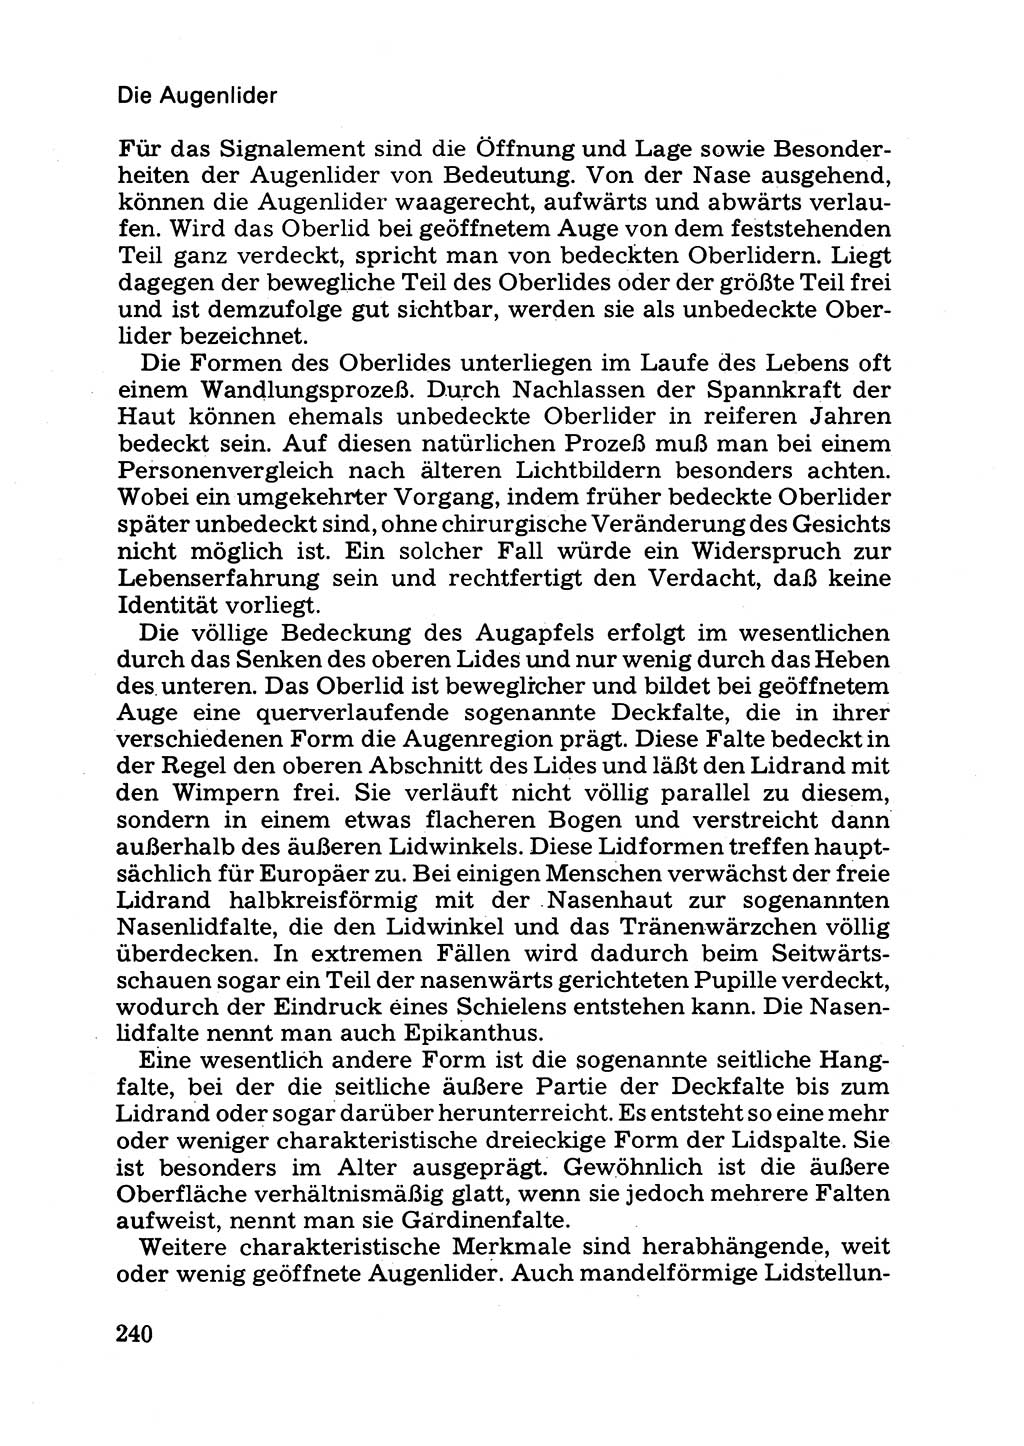 Das subjektive Porträt [Deutsche Demokratische Republik (DDR)] 1981, Seite 240 (Subj. Port. DDR 1981, S. 240)